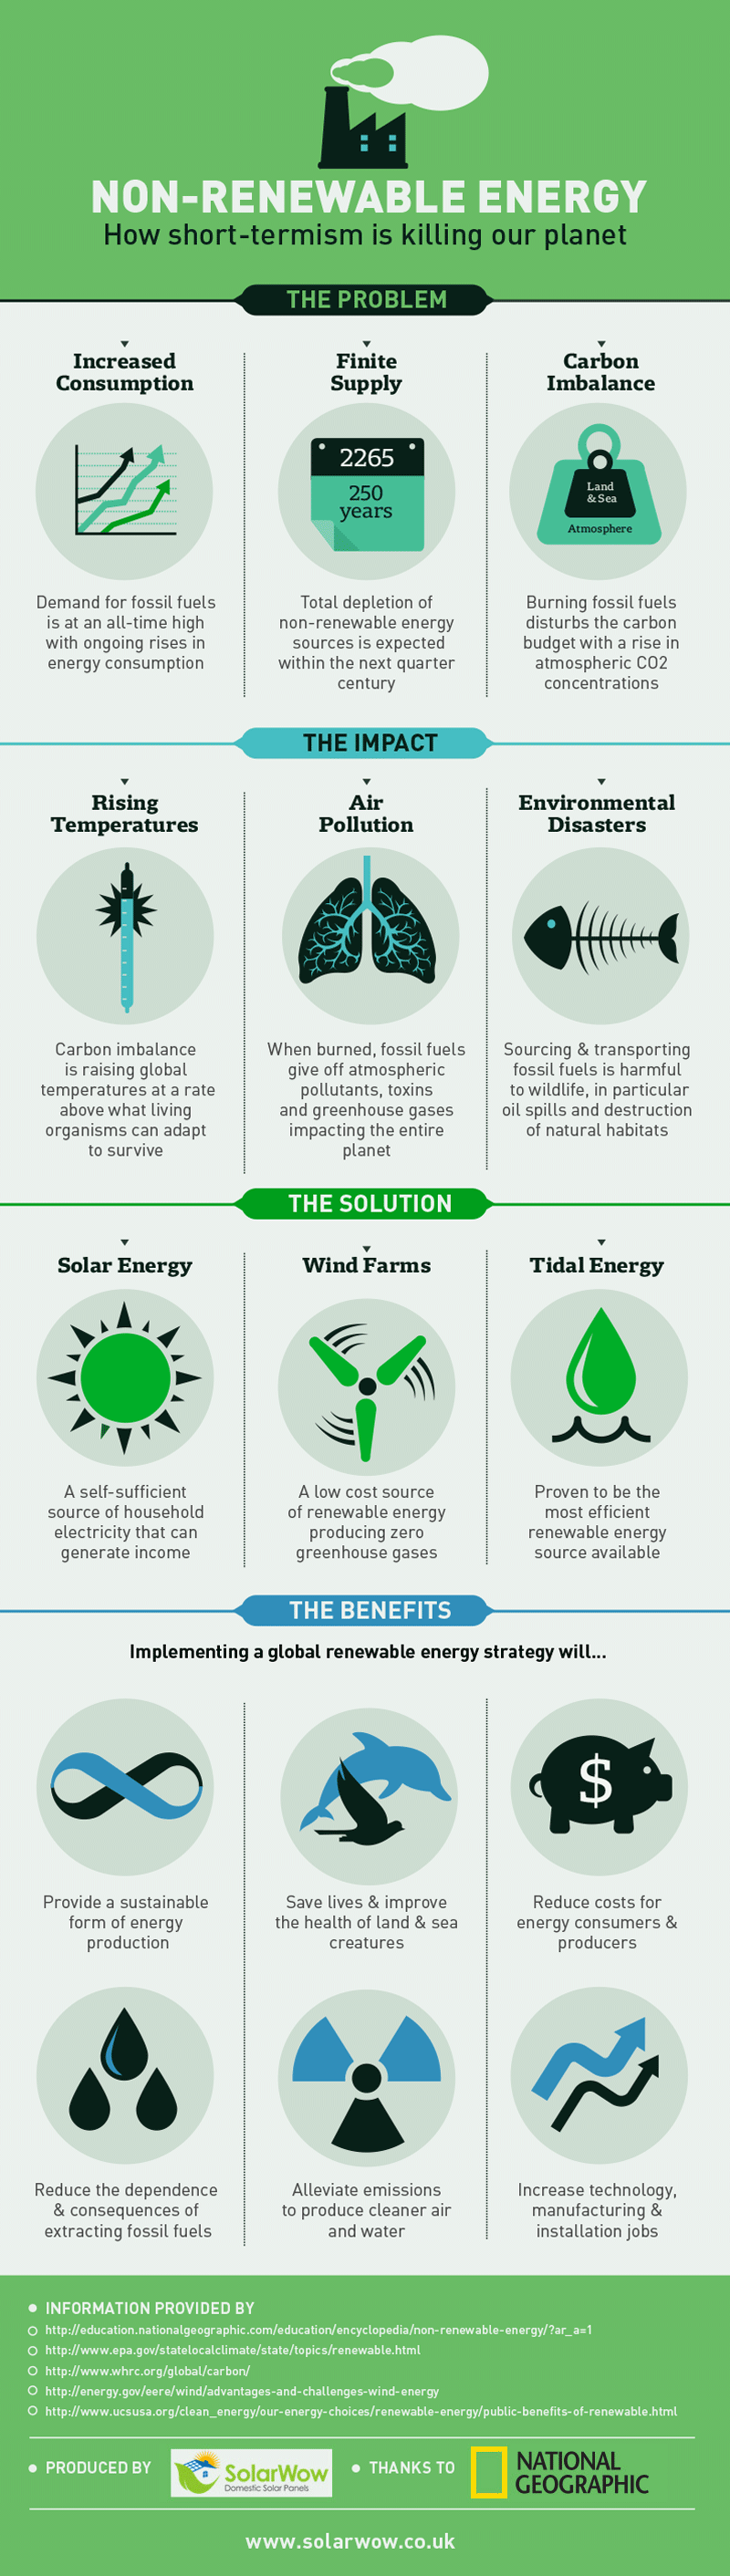 Non-Renewable Energy – How Short-Termism is Killing Our Planet